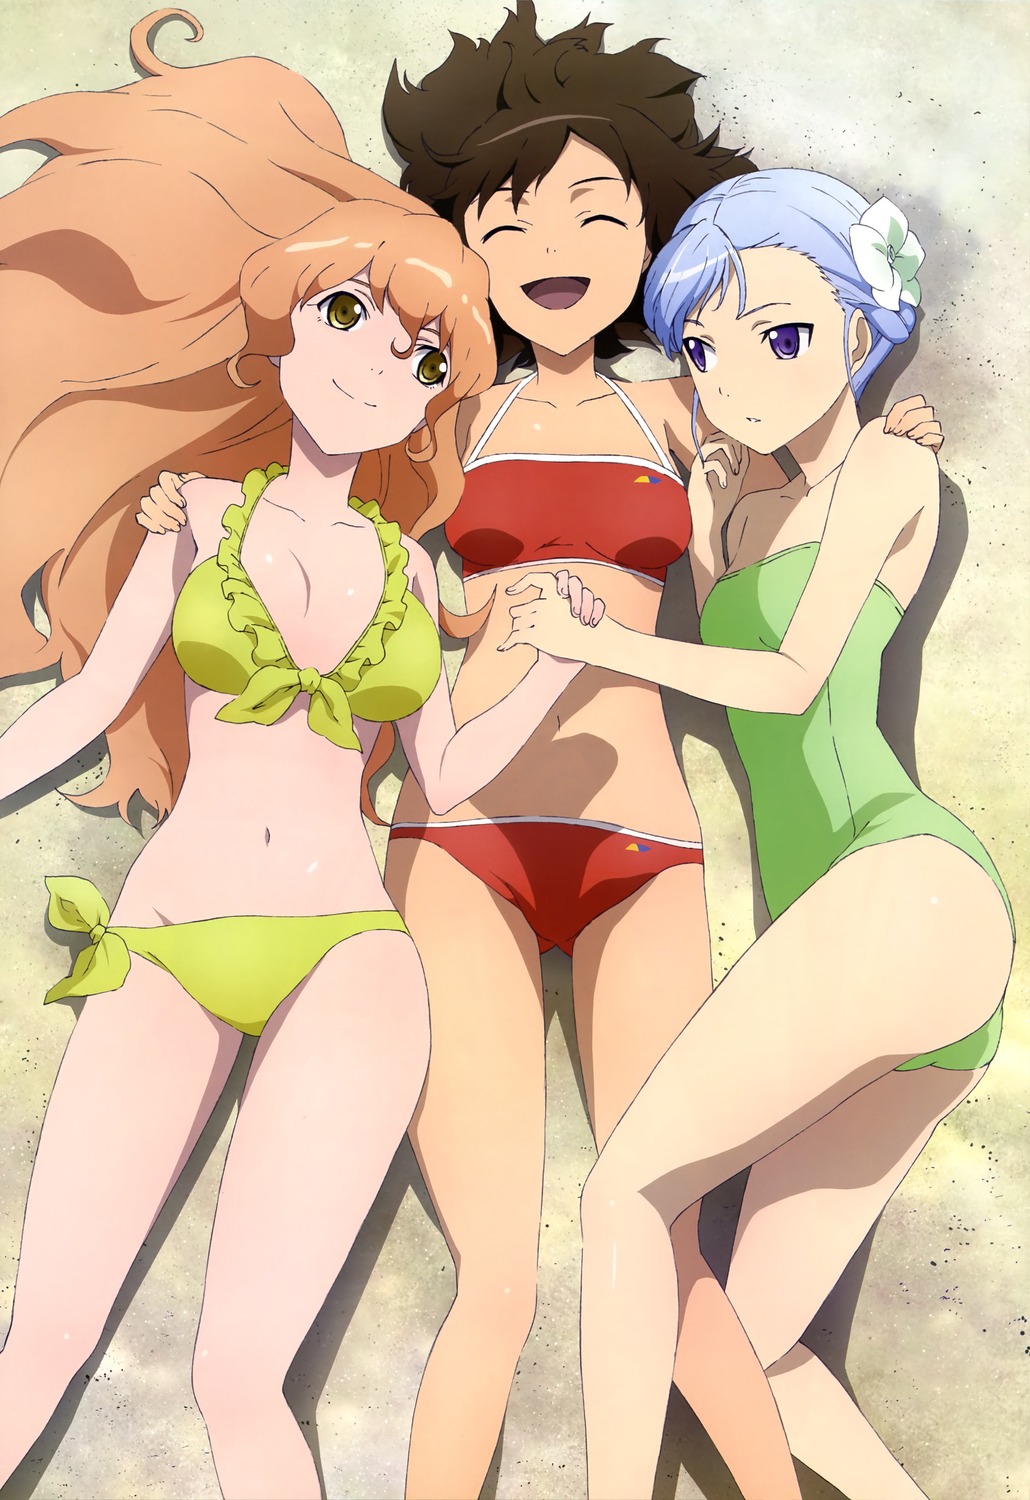 Yuri anime girls bikini